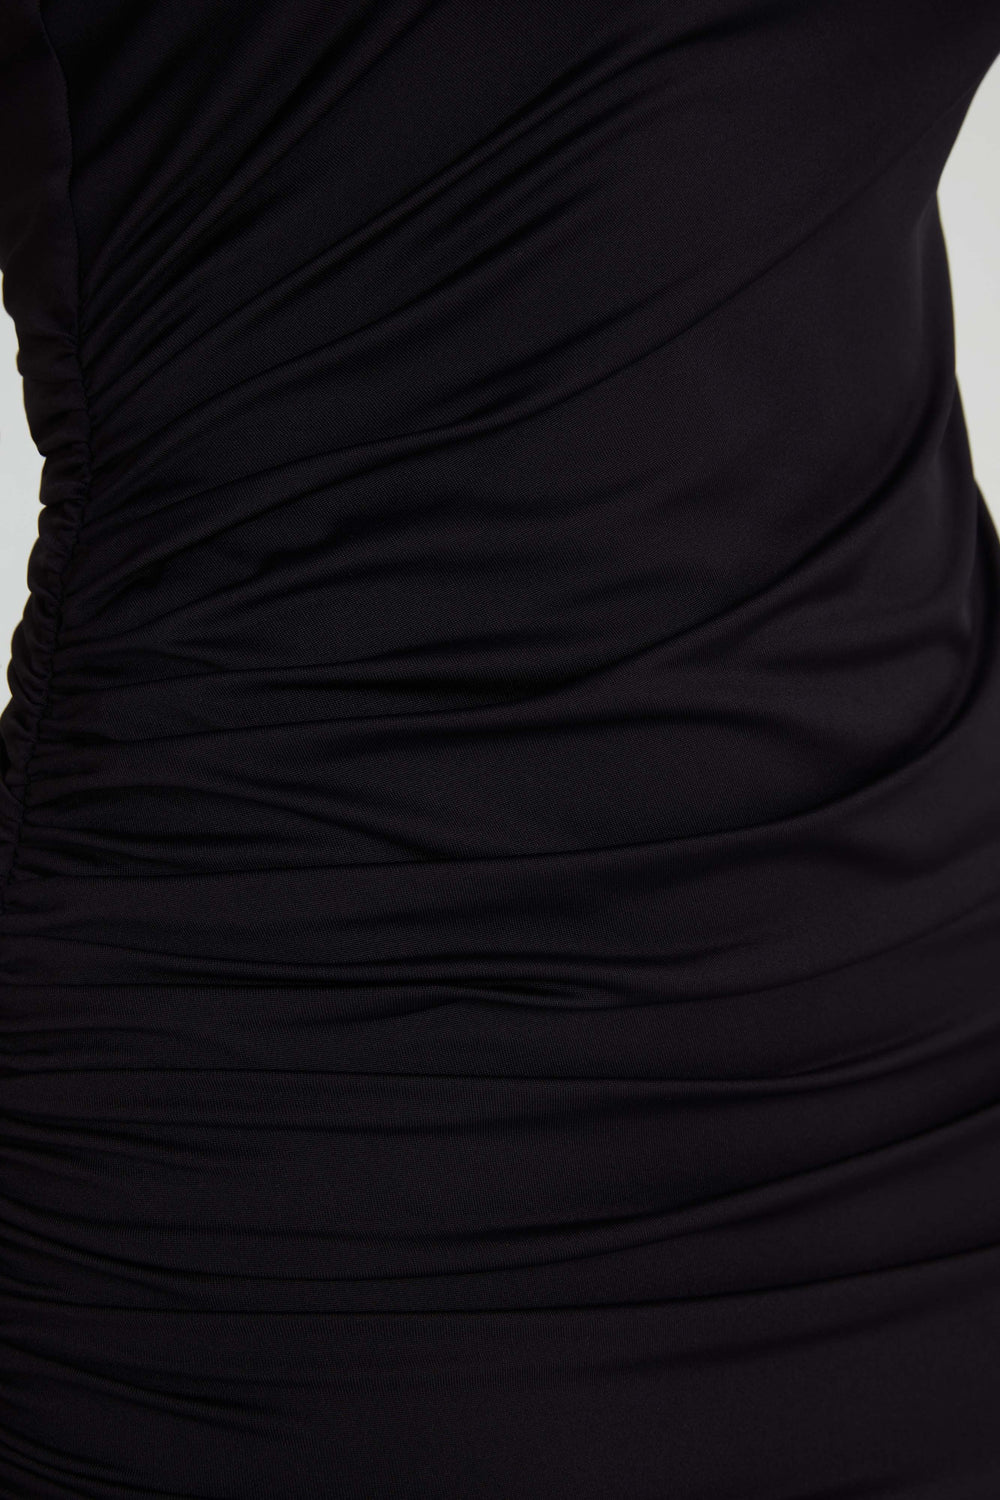 Astraea Recycled Nylon Drape Maxi Dress - Black